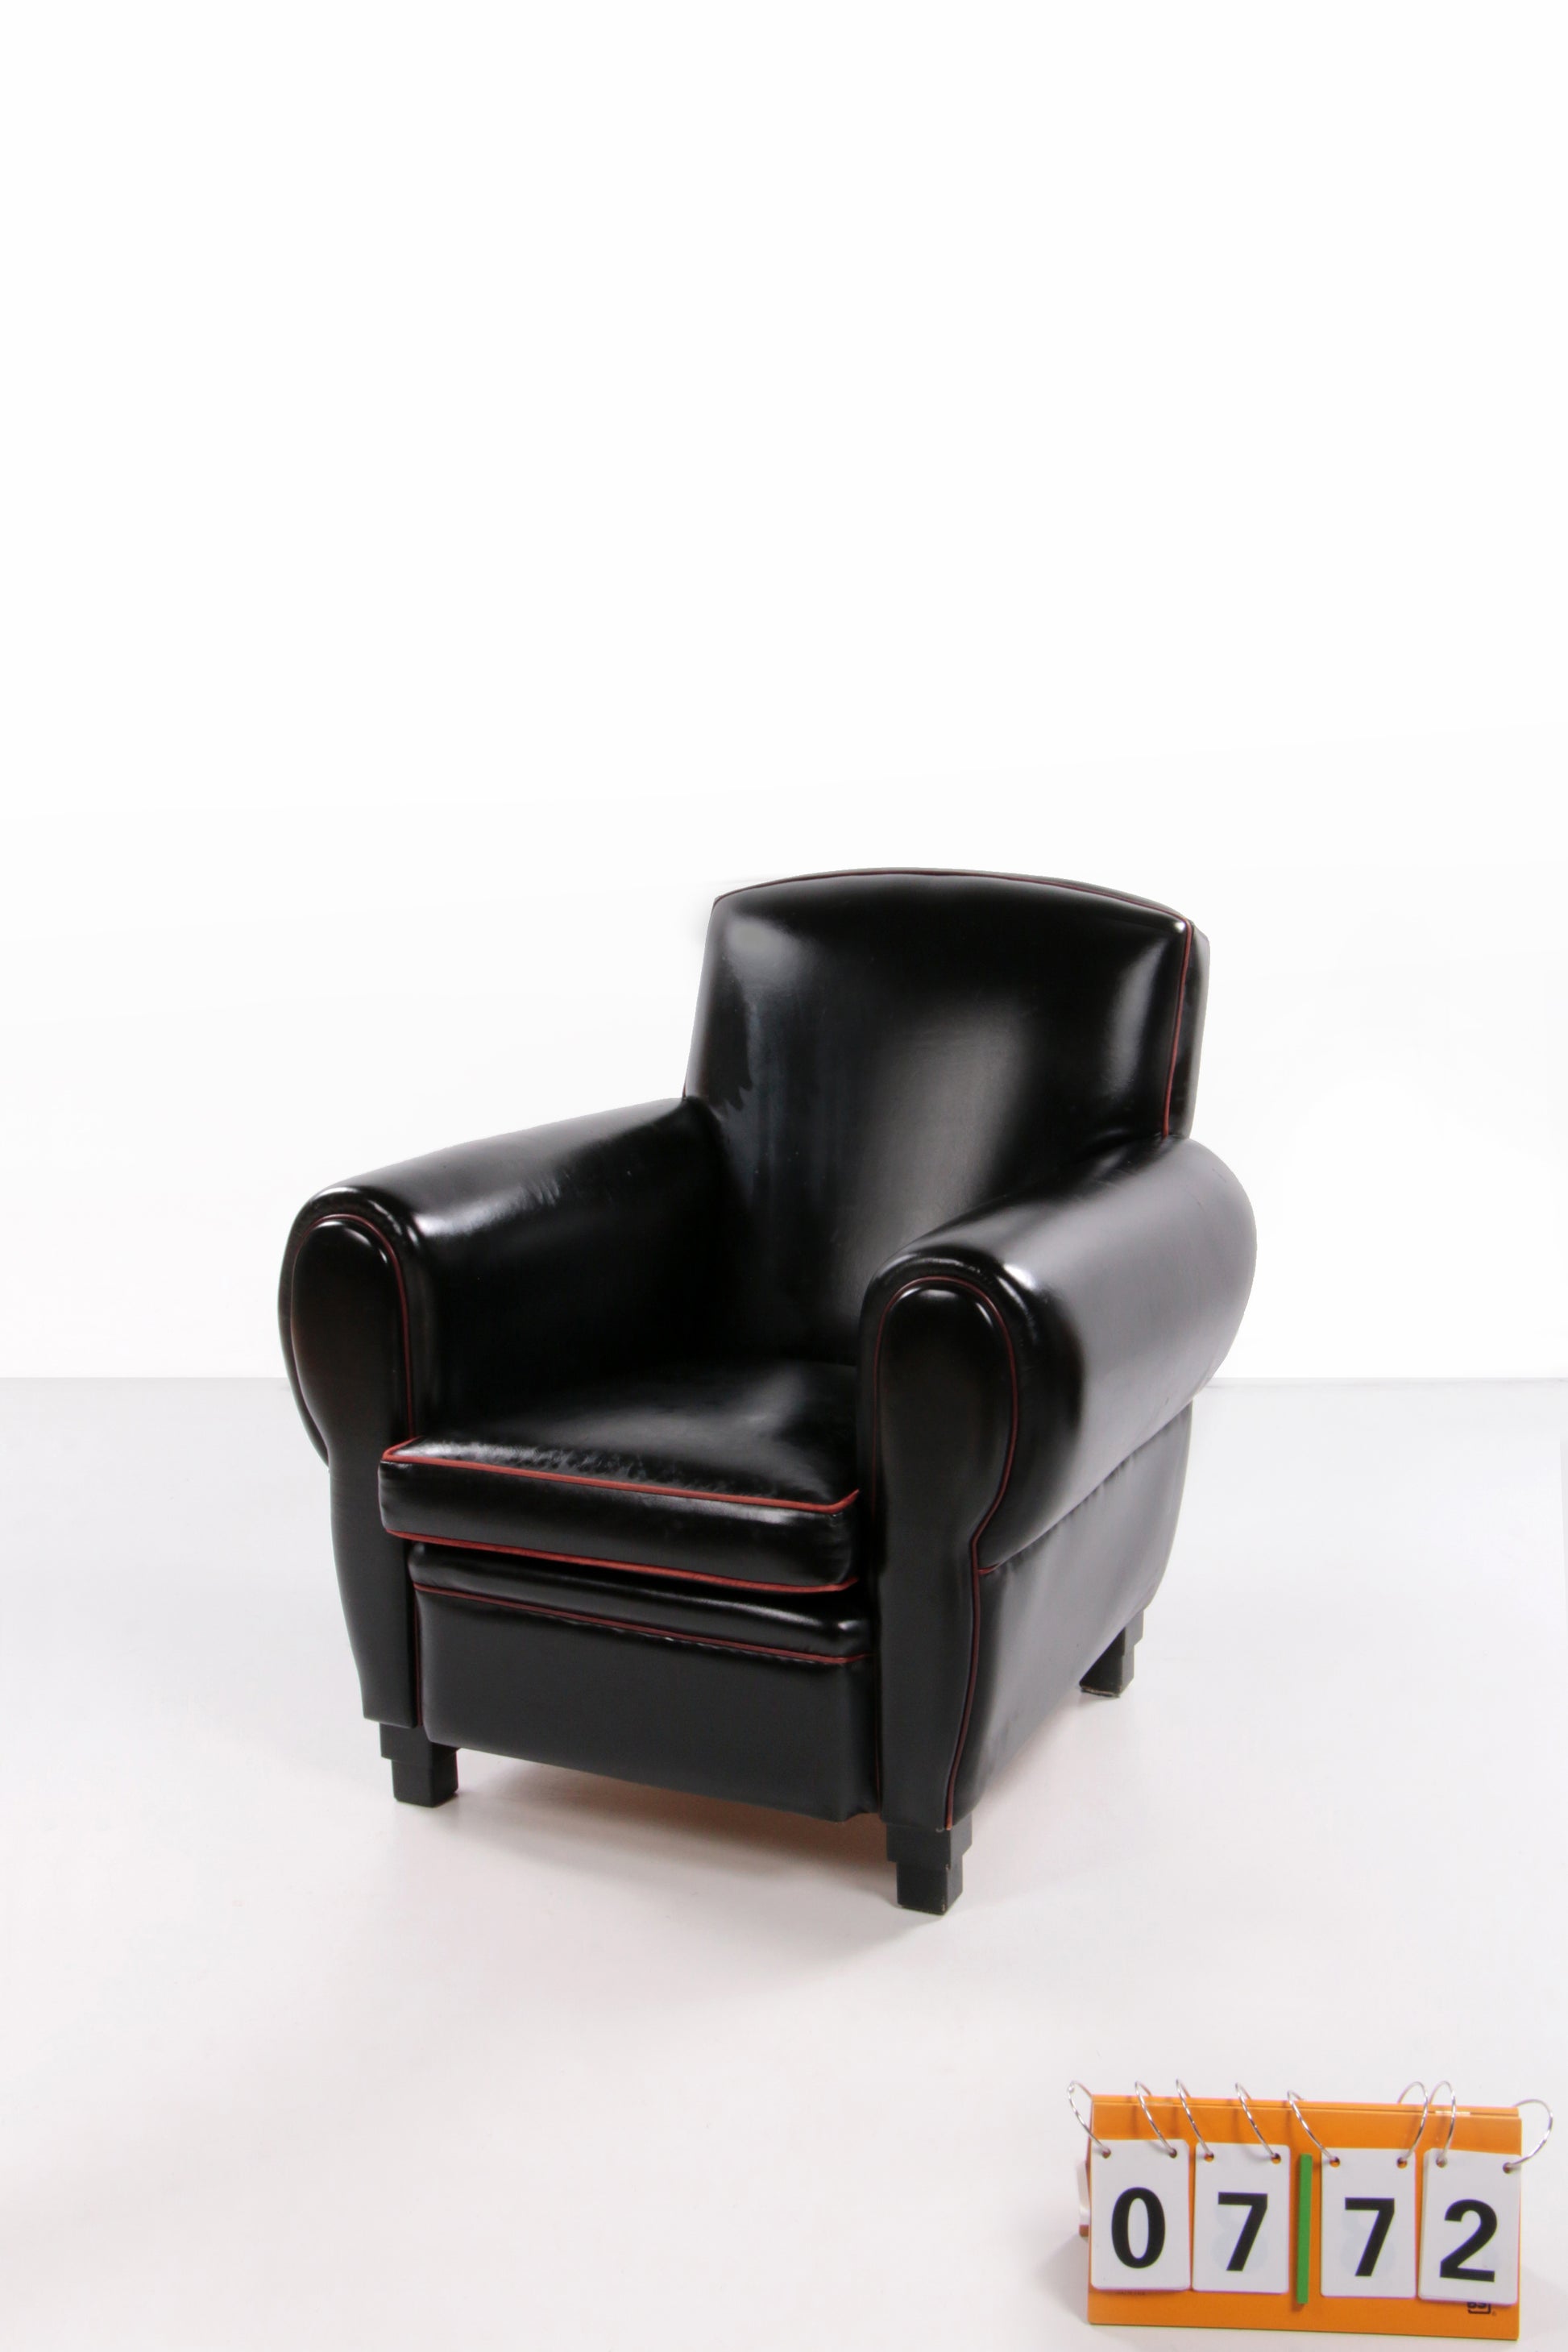 Zeer comfortabele en prachtige leren fauteuil van LA Lounge Atelier.